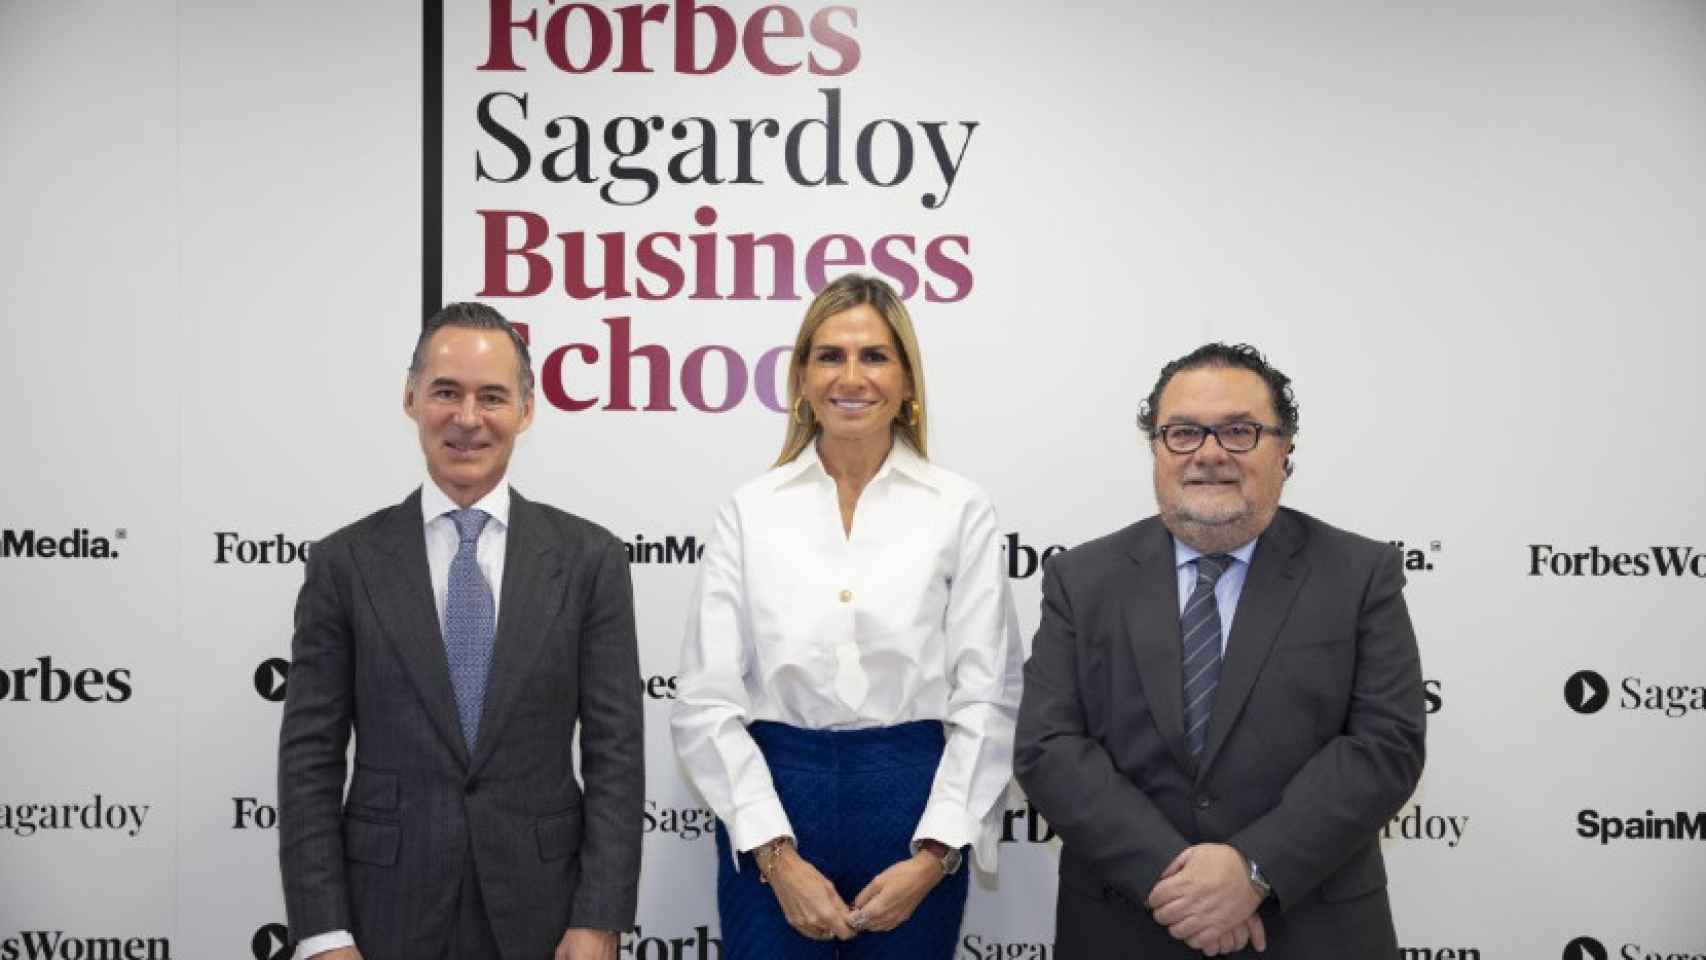 Presentación de Forbes Sagardoy Business School